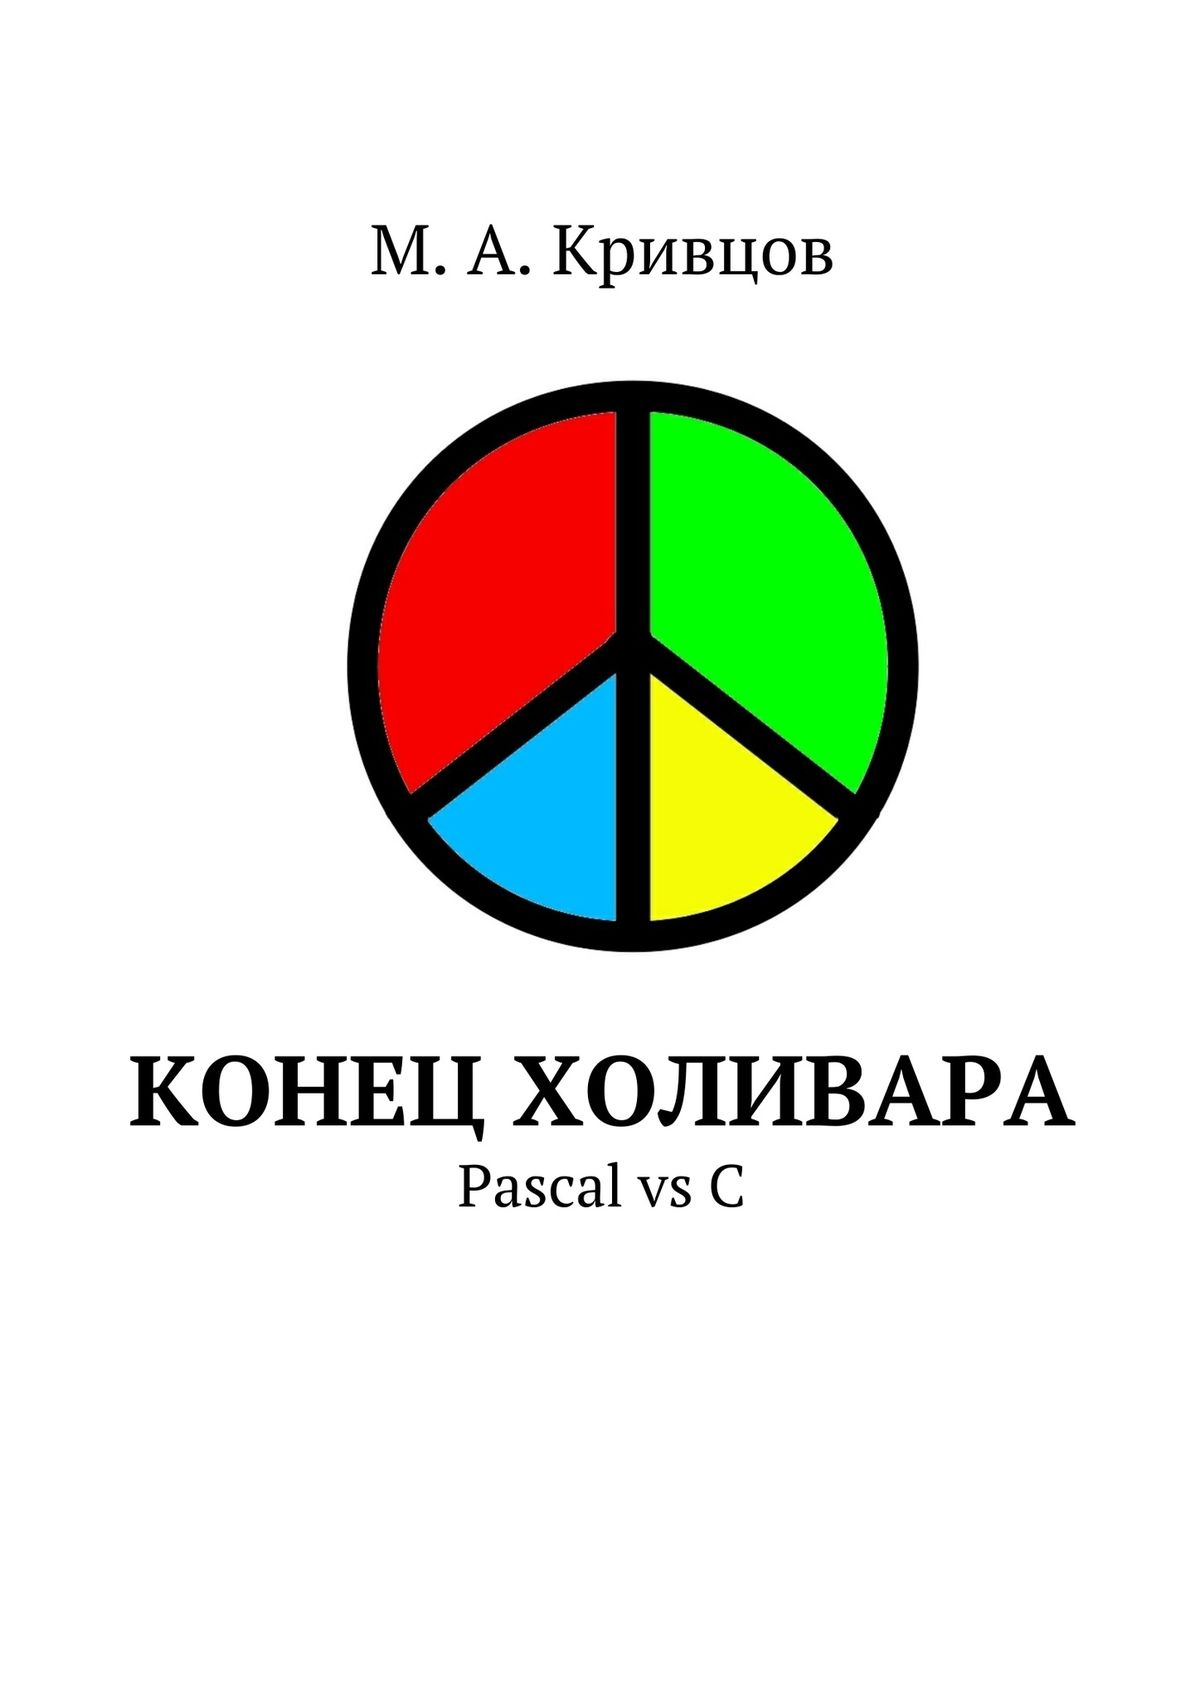 Книга  Конец холивара. Pascal vs C созданная М. Кривцов может относится к жанру программирование. Стоимость электронной книги Конец холивара. Pascal vs C с идентификатором 10243468 составляет 40.00 руб.